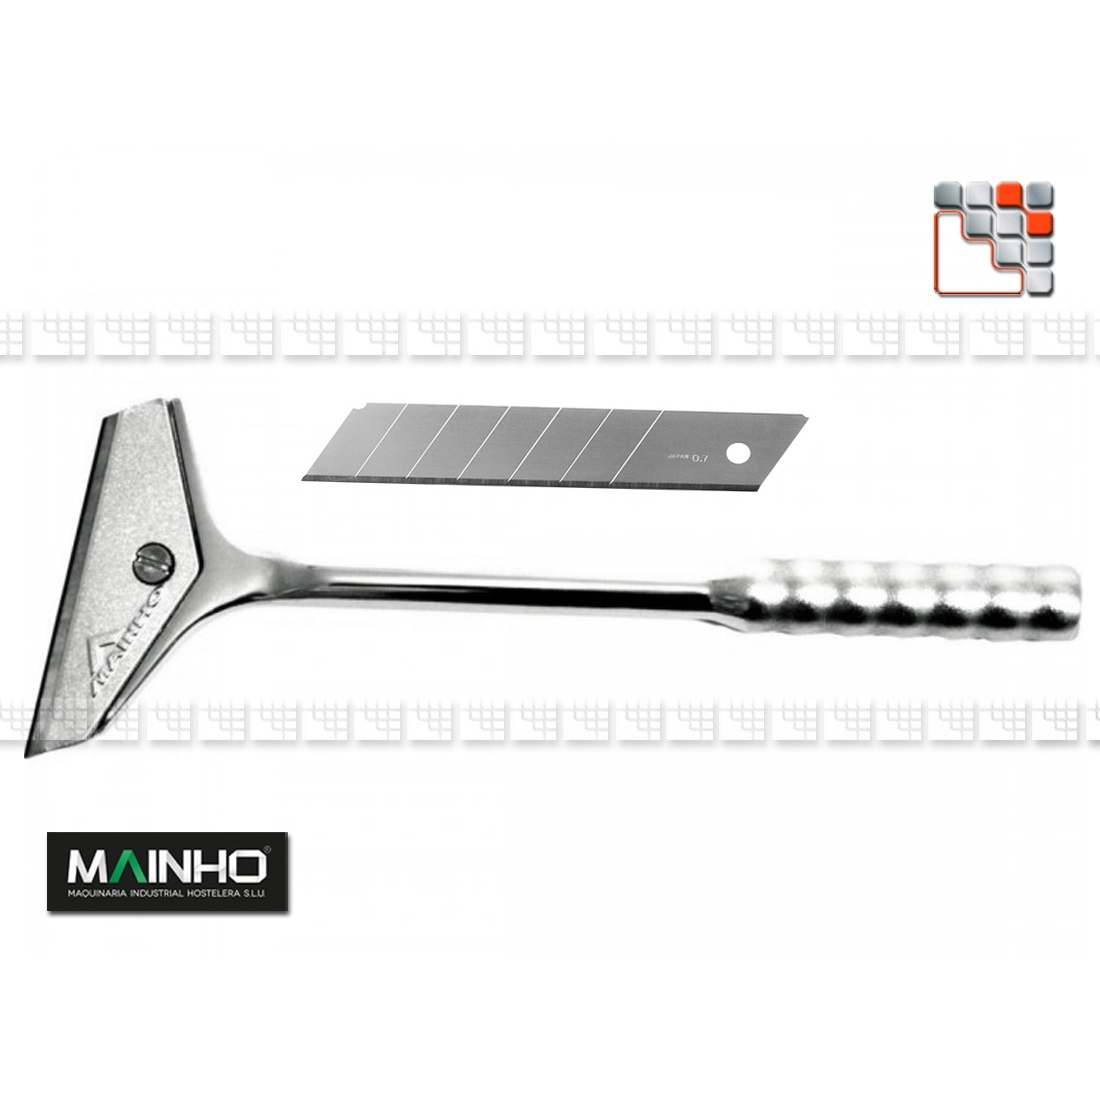 Hard Chrome Scraper MAINHO M36-ZC1 MAINHO SAV - Accessoires